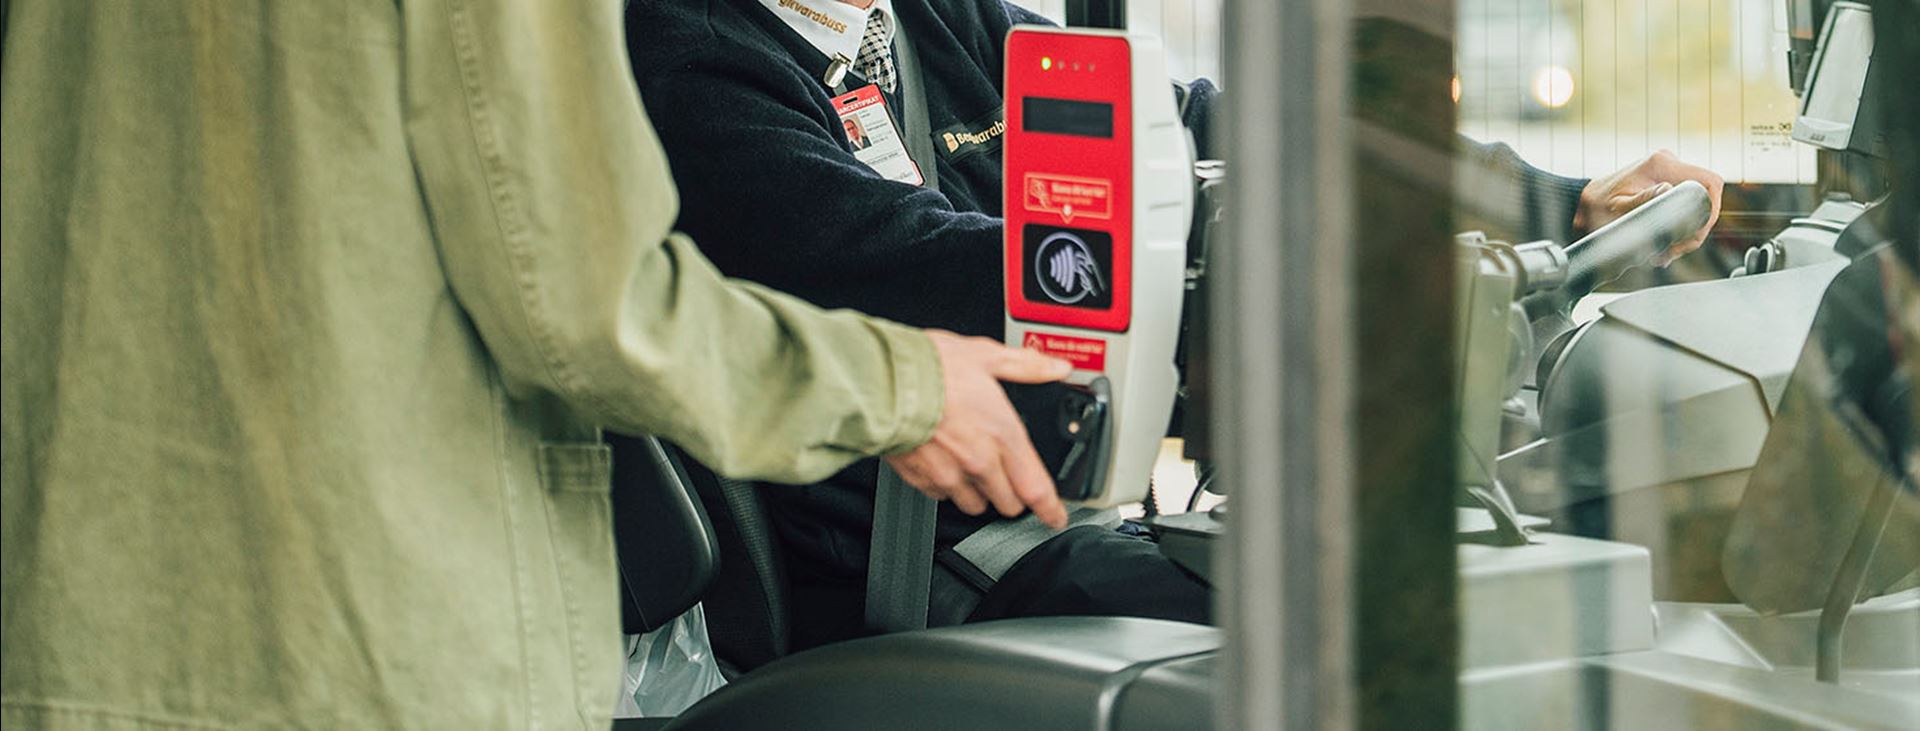 En resenär håller en smartphone mot en röd biljettläsare på bussen.